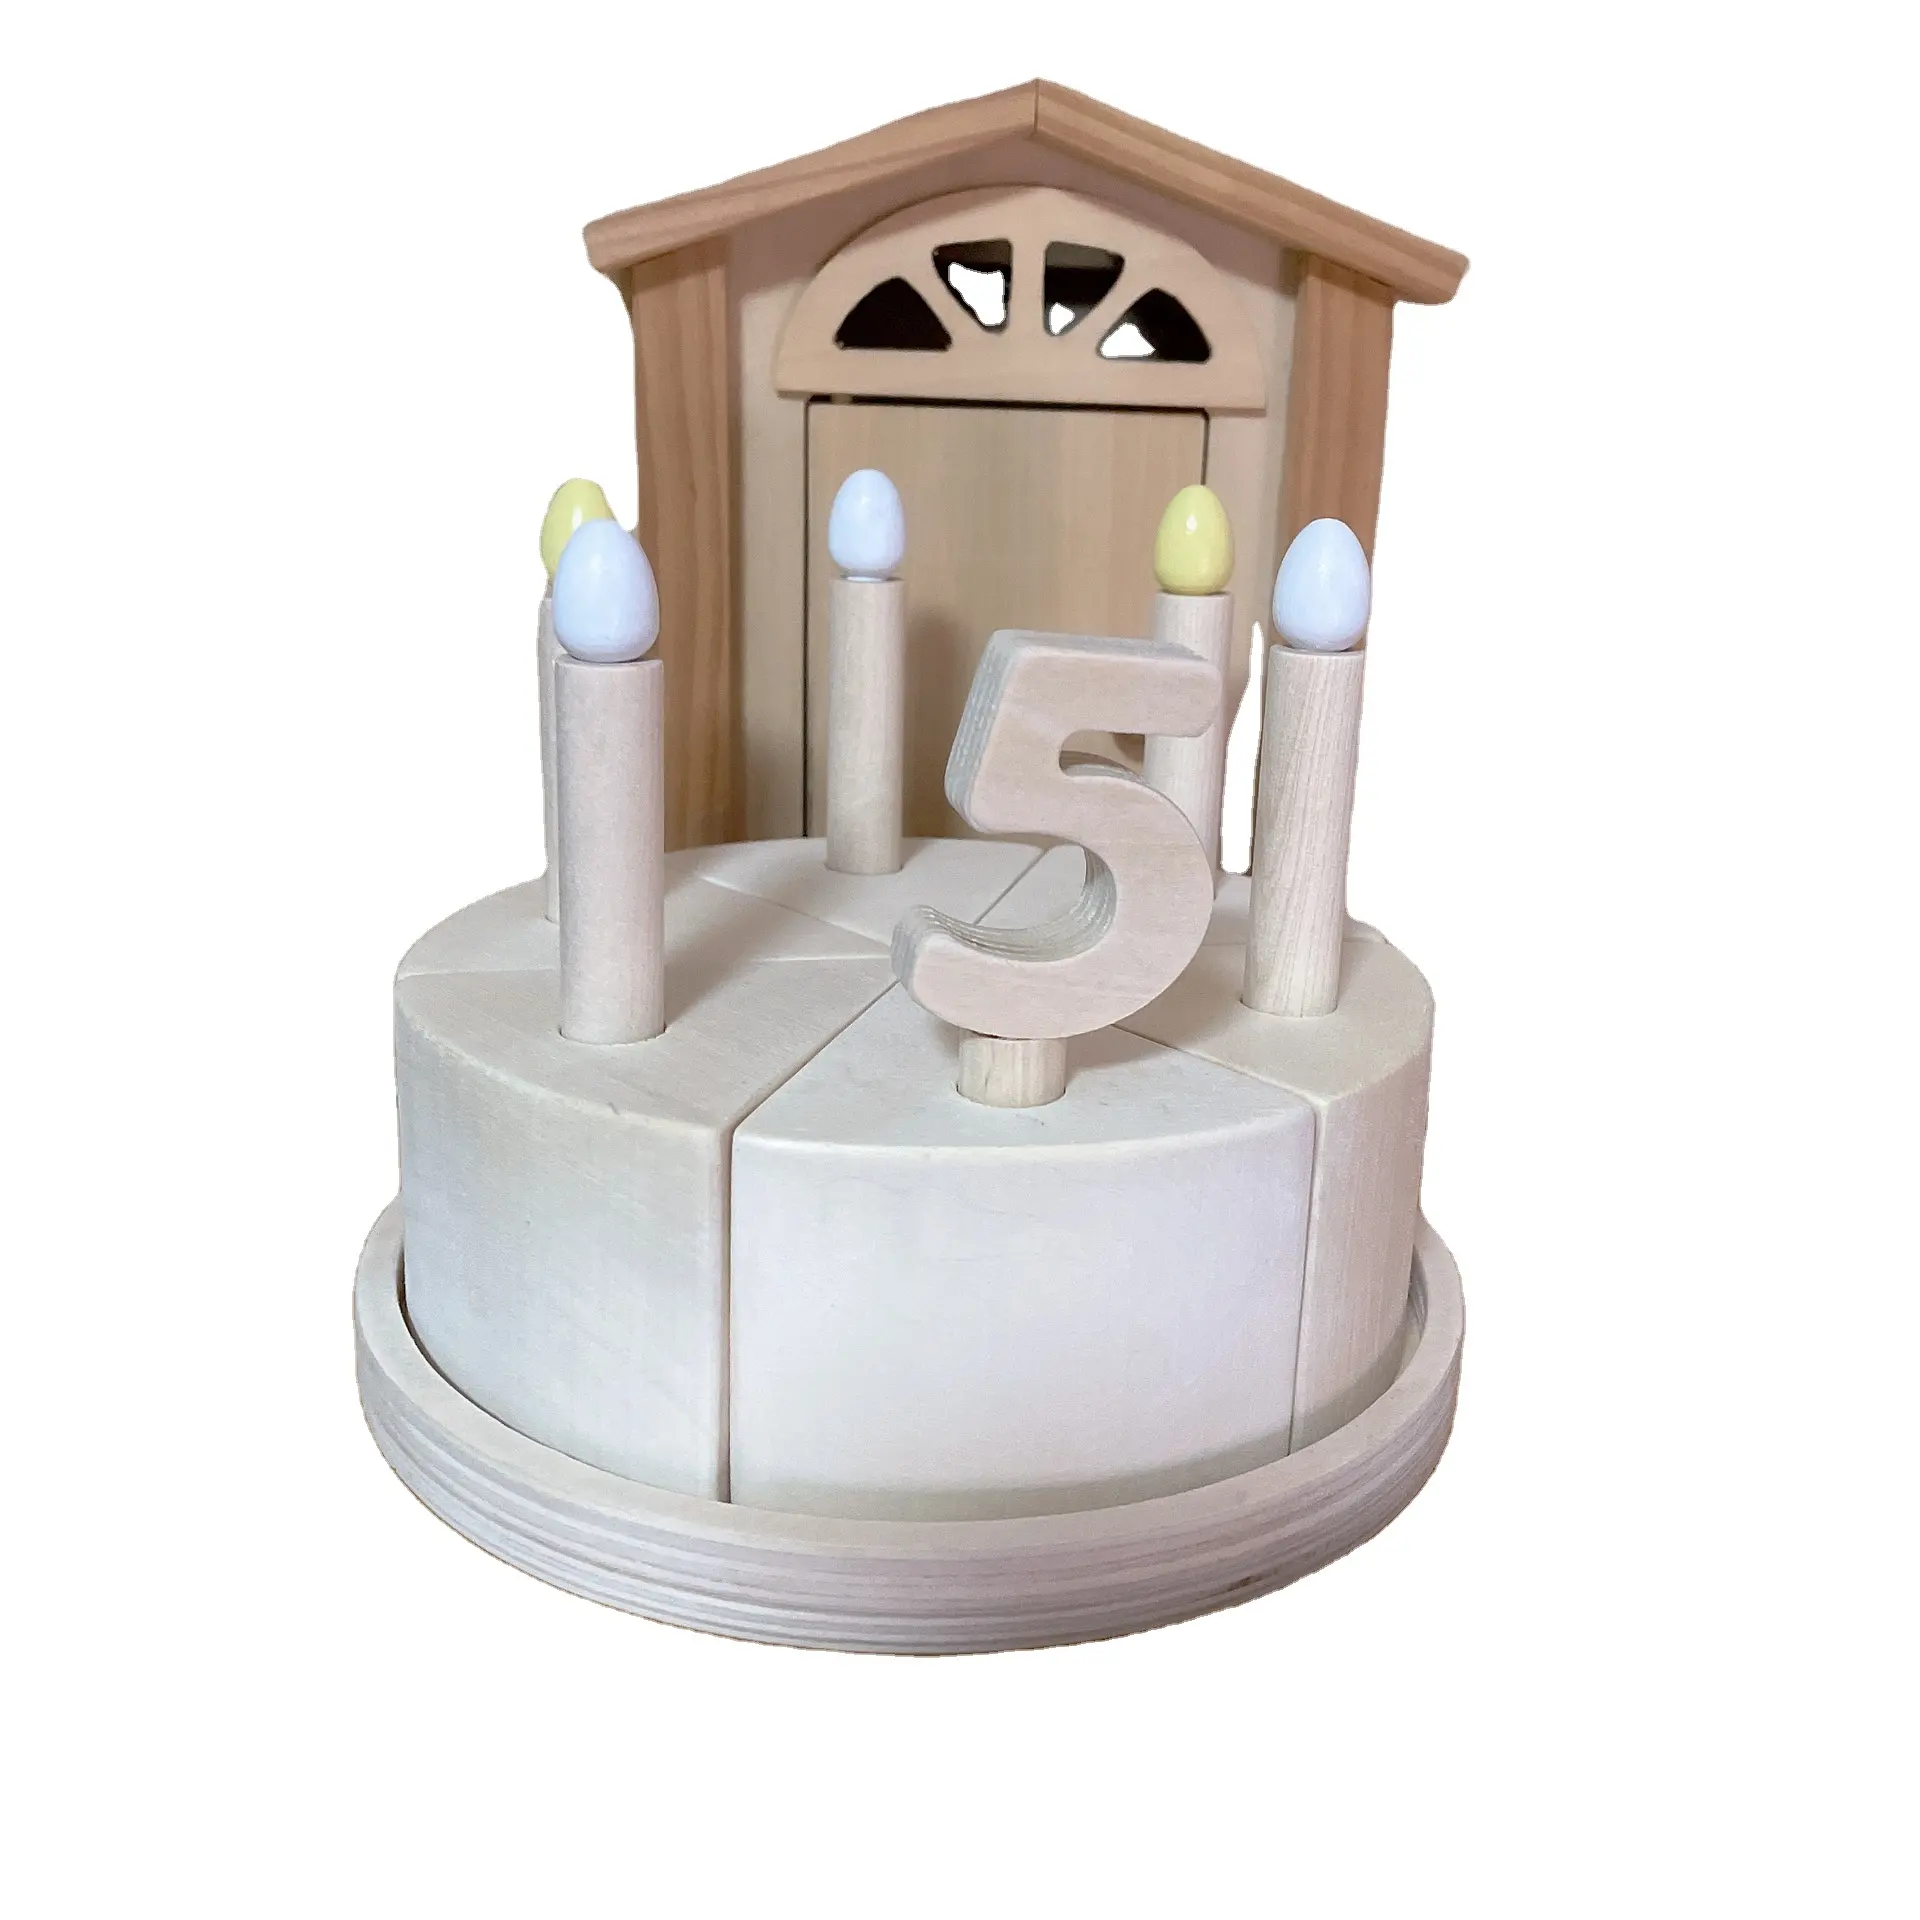 תוספות טיליה יומן דיגיטלי עוגת יום הולדת עוגת DIY מדריך ציור עץ צעצועים חינוכיים להרכיב צעצועי מונטסורי חינוכי כדי